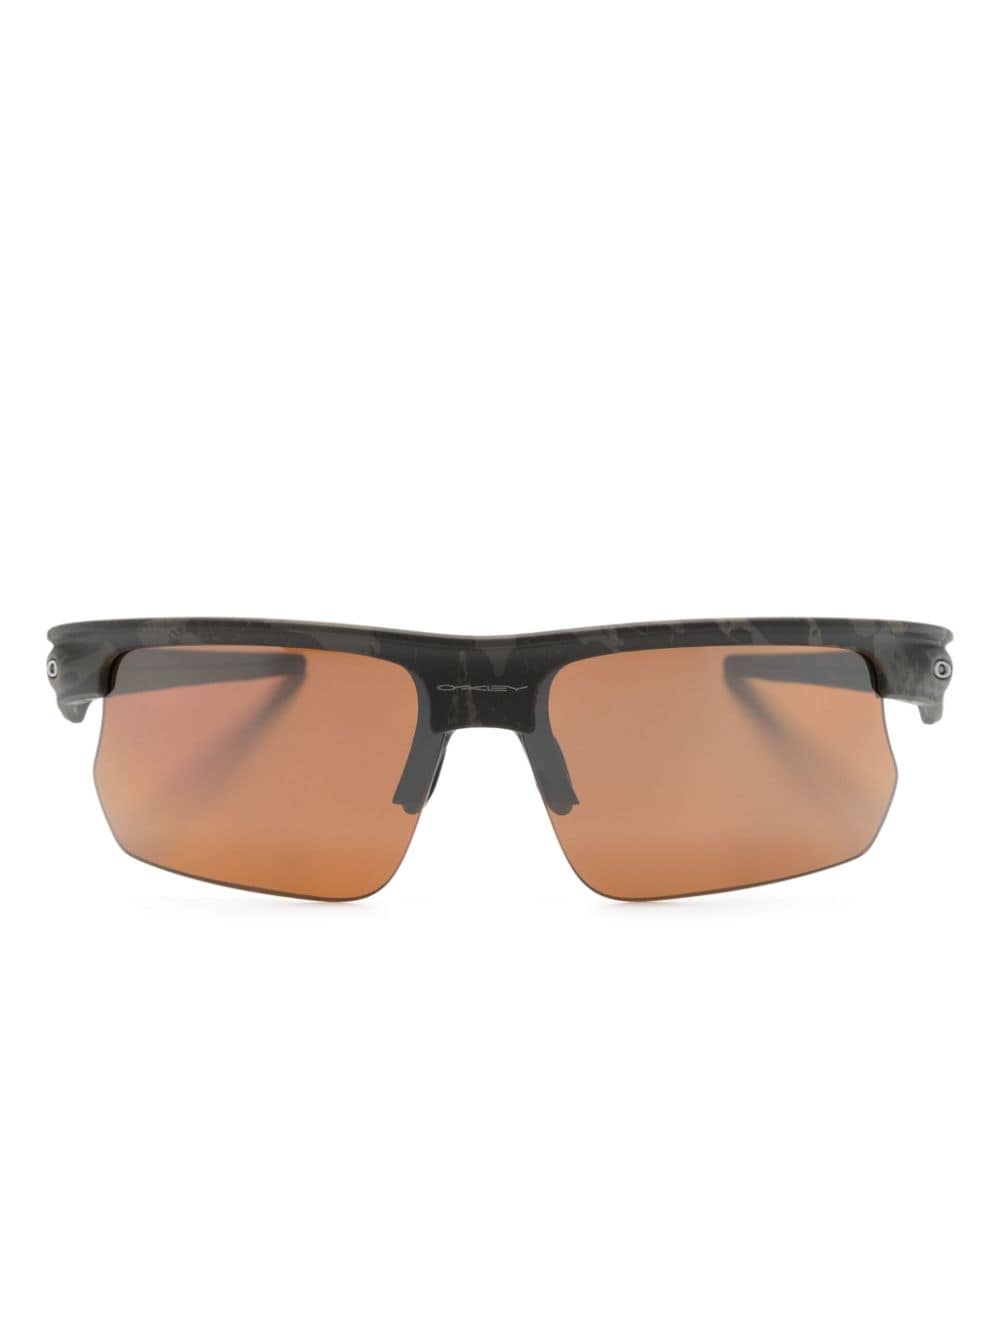 BiSphaera™? occhiali da sole performanti con montatura rettangolare<br><br><br><br>